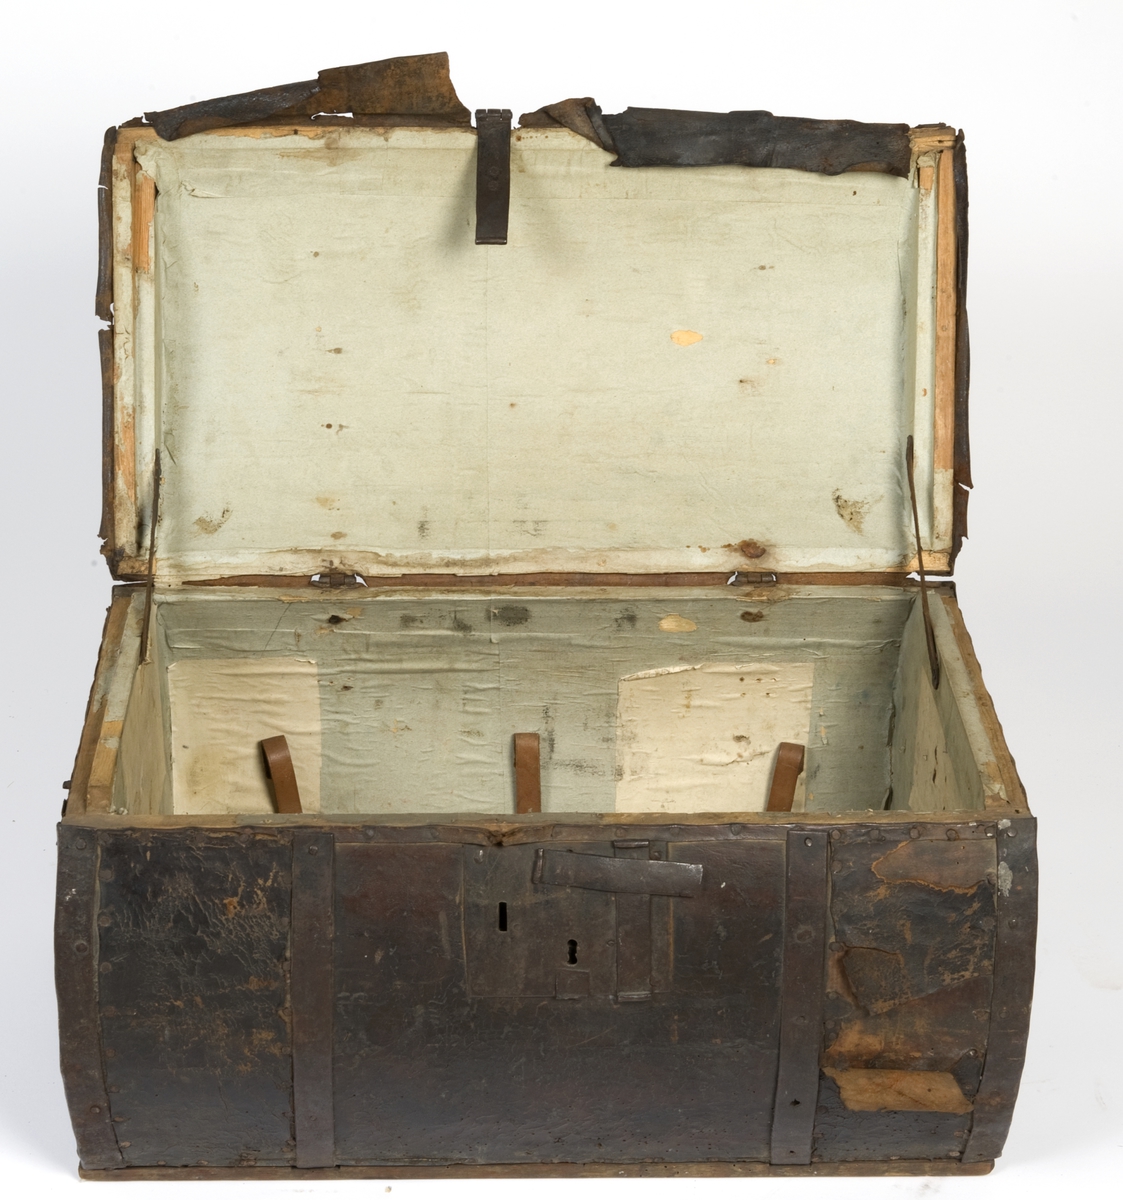 Sylinderformet reisekiste, trukket med lær. Innsiden er avdekket med papir. Jernbånd rundt kisten.